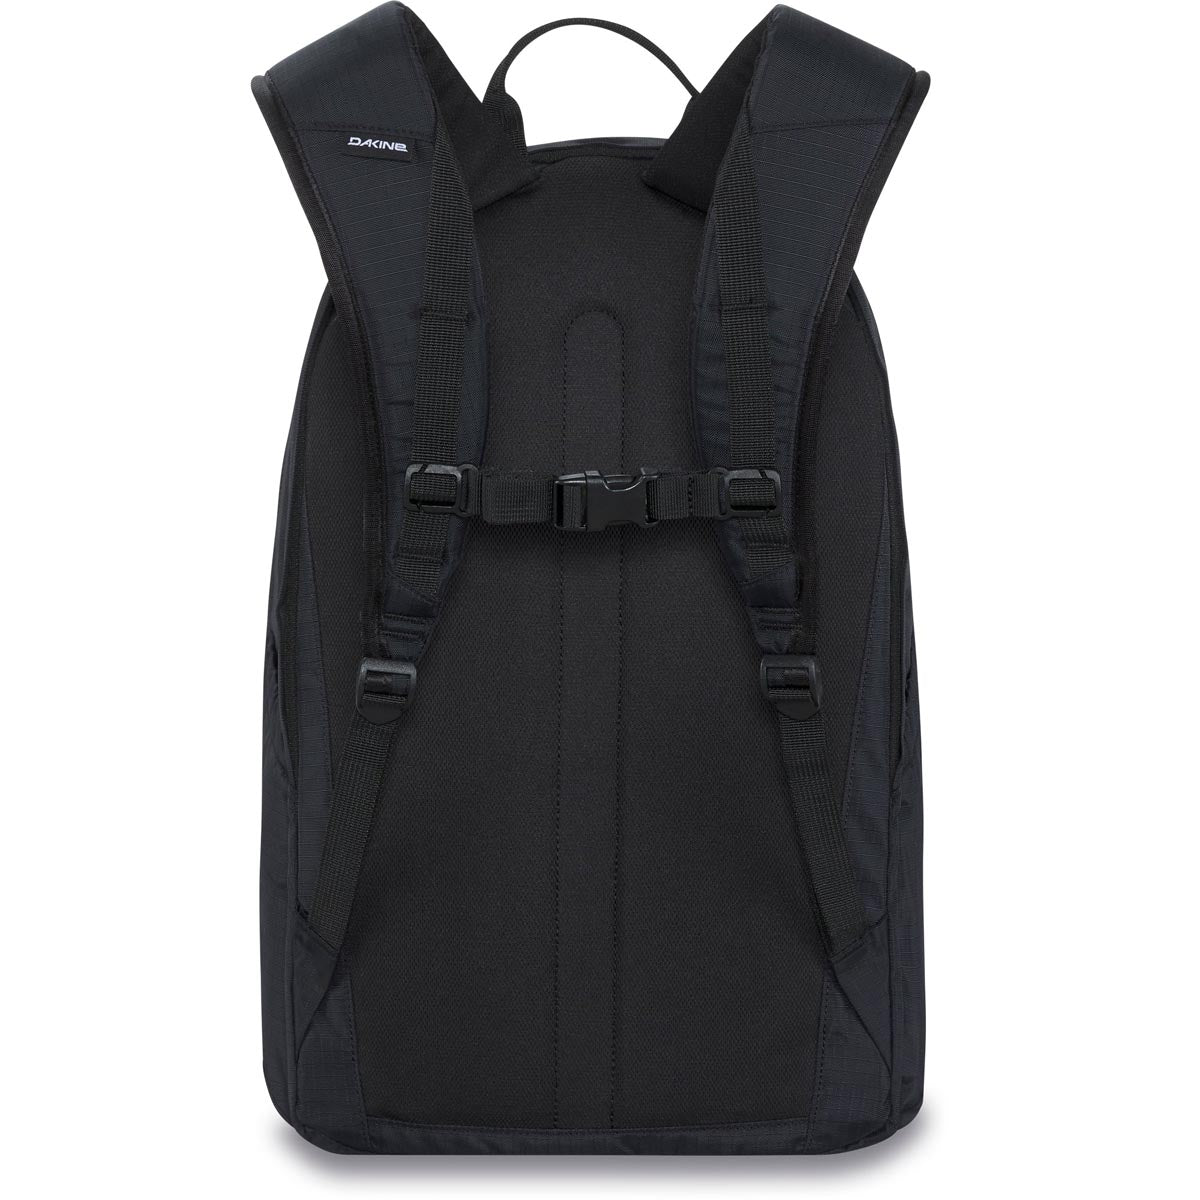 Dakine Method Dlx 28l Backpack - Black Ripstop image 2